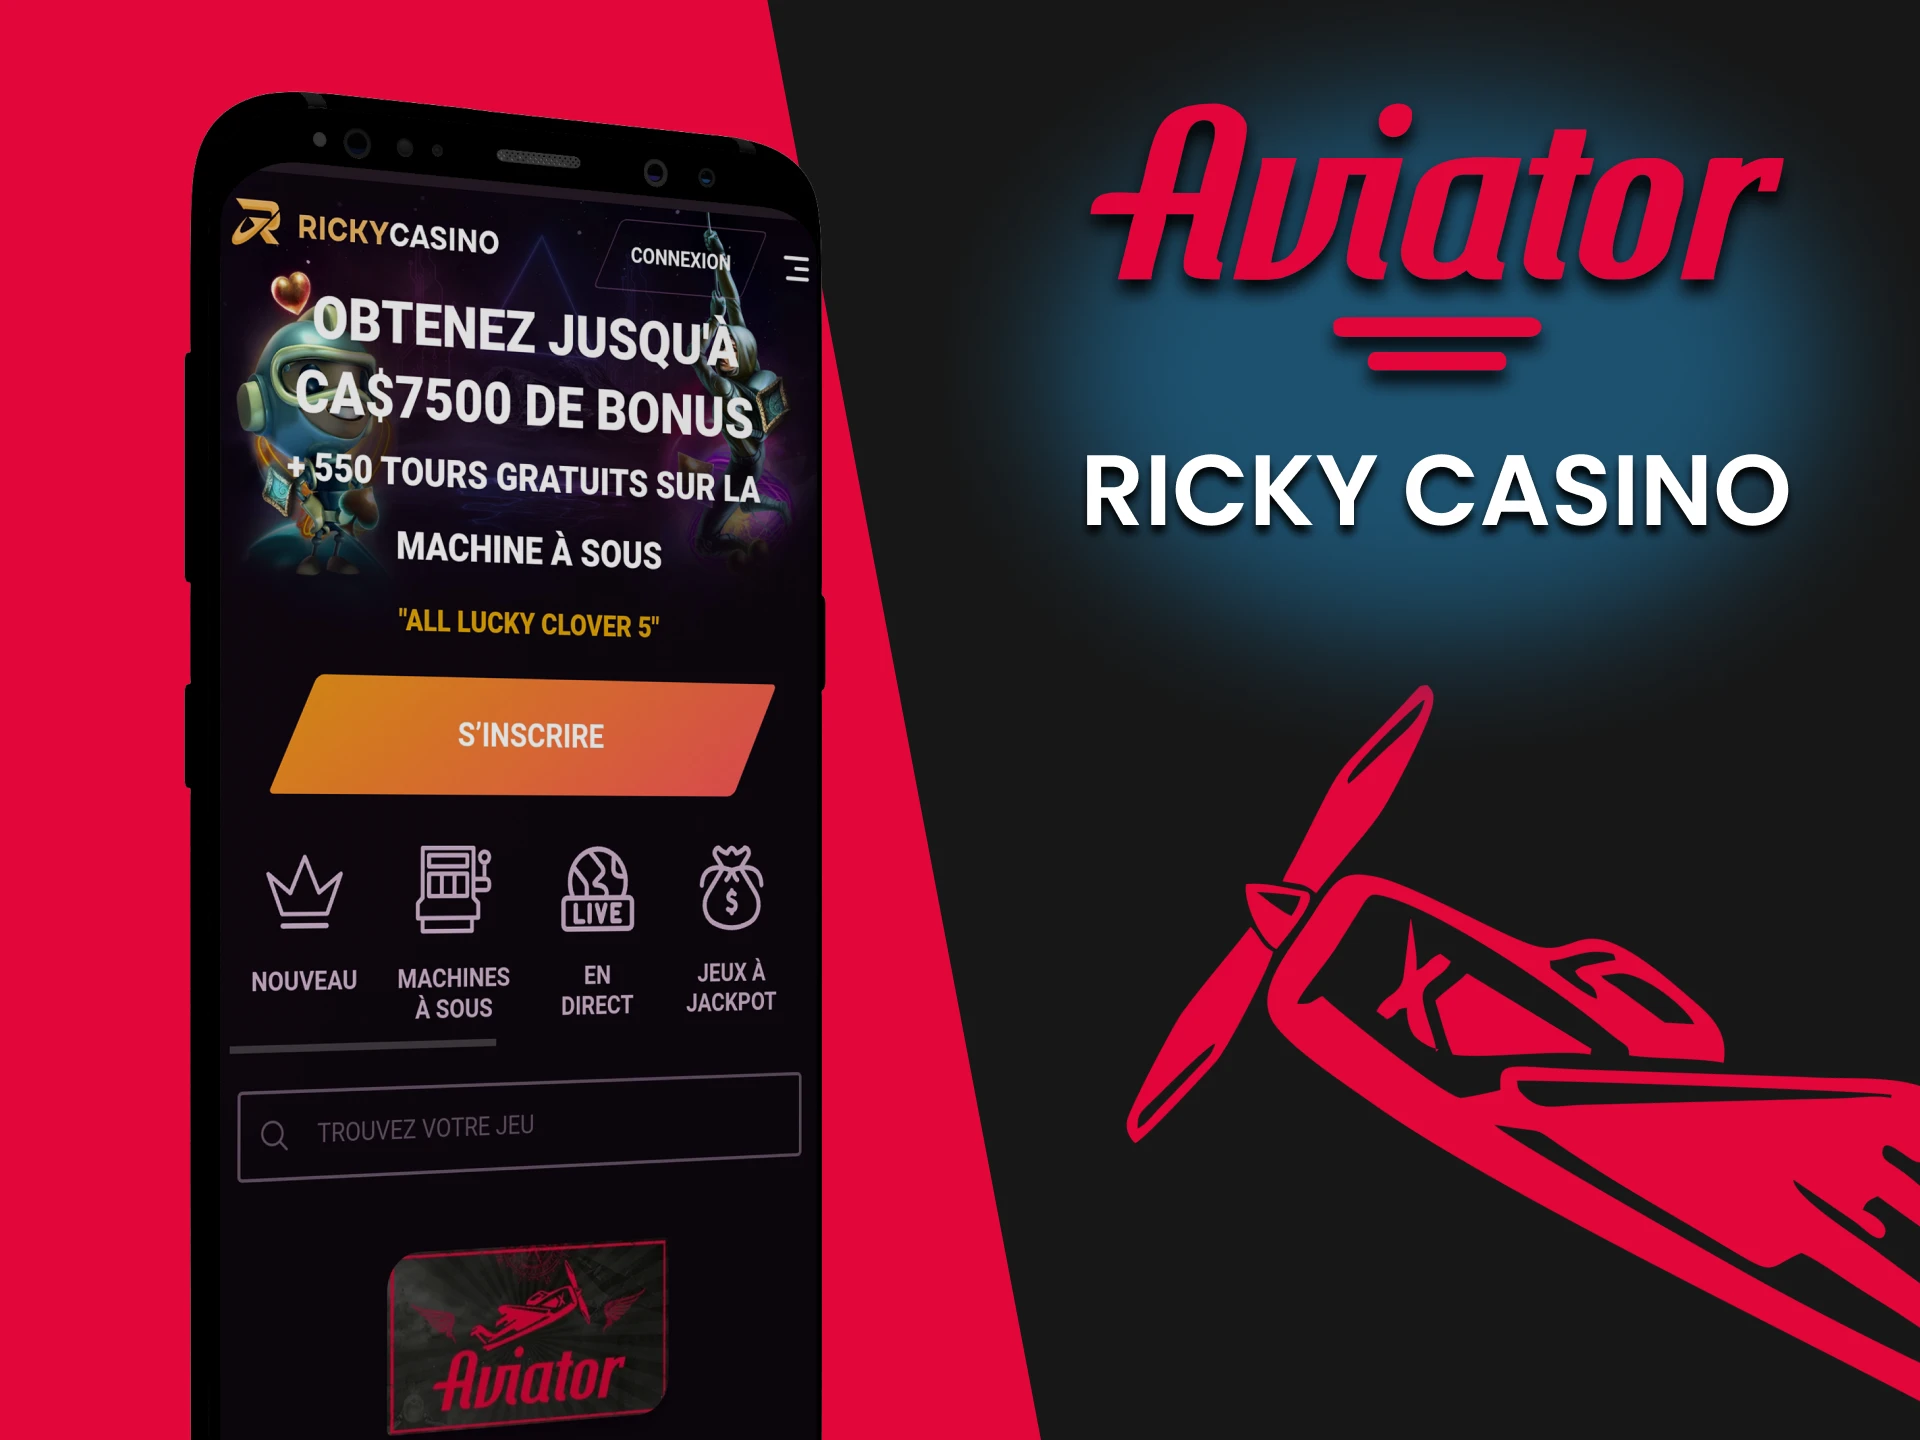 Téléchargez l'application Ricky pour jouer à Aviator.